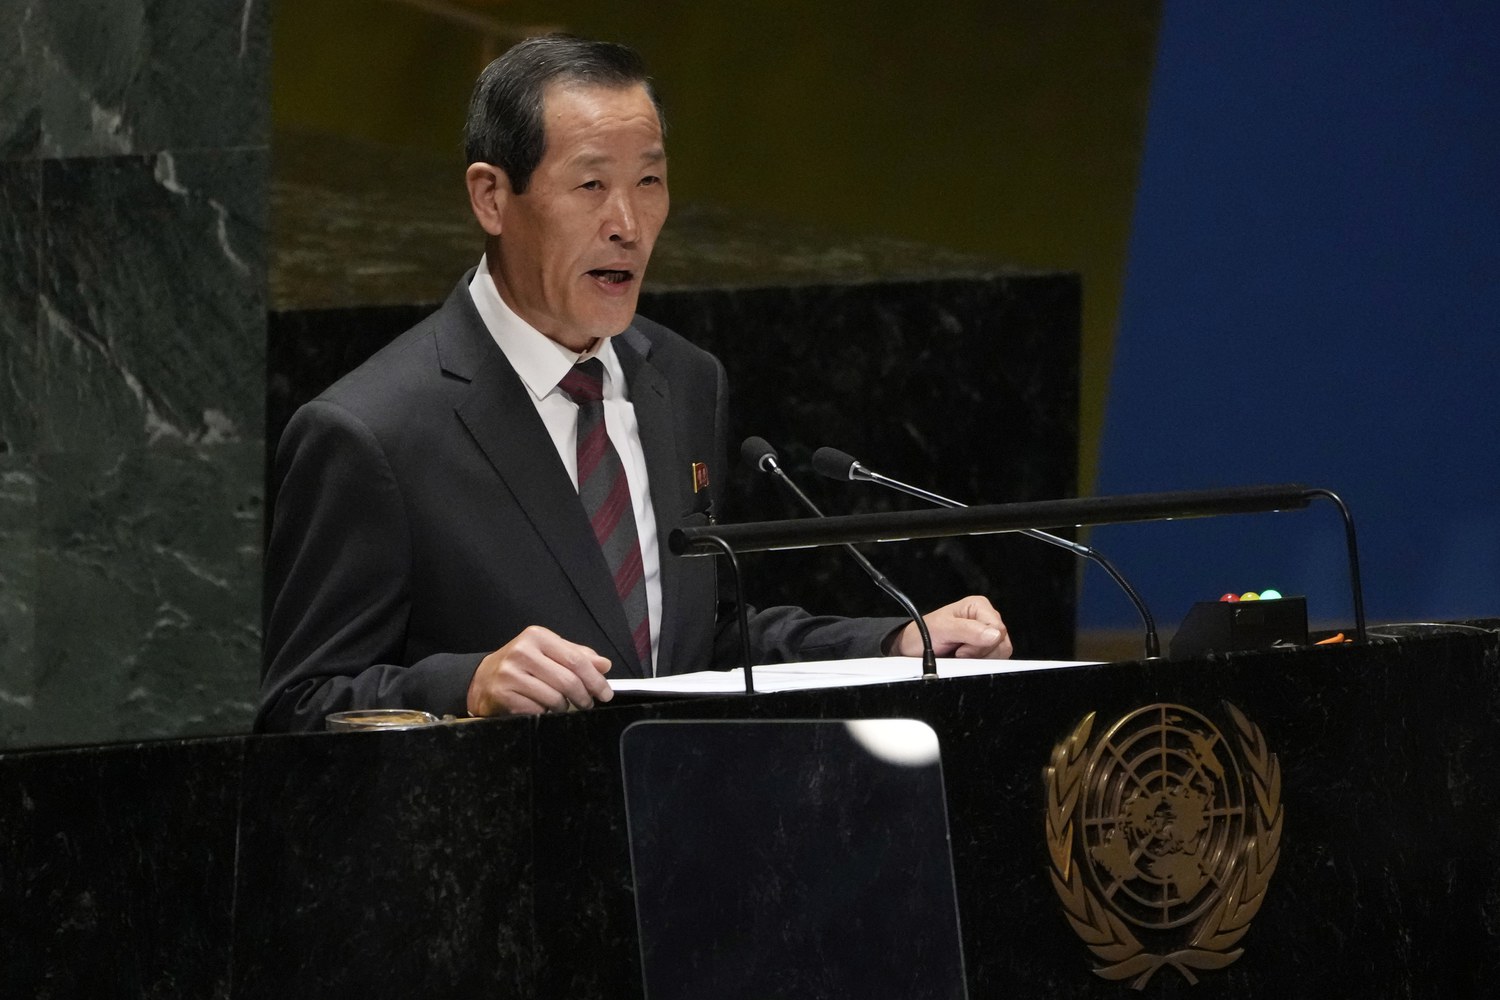 Les Corées échangent des piques à l'ONU alors que le Nord menace de guerre nucléaire